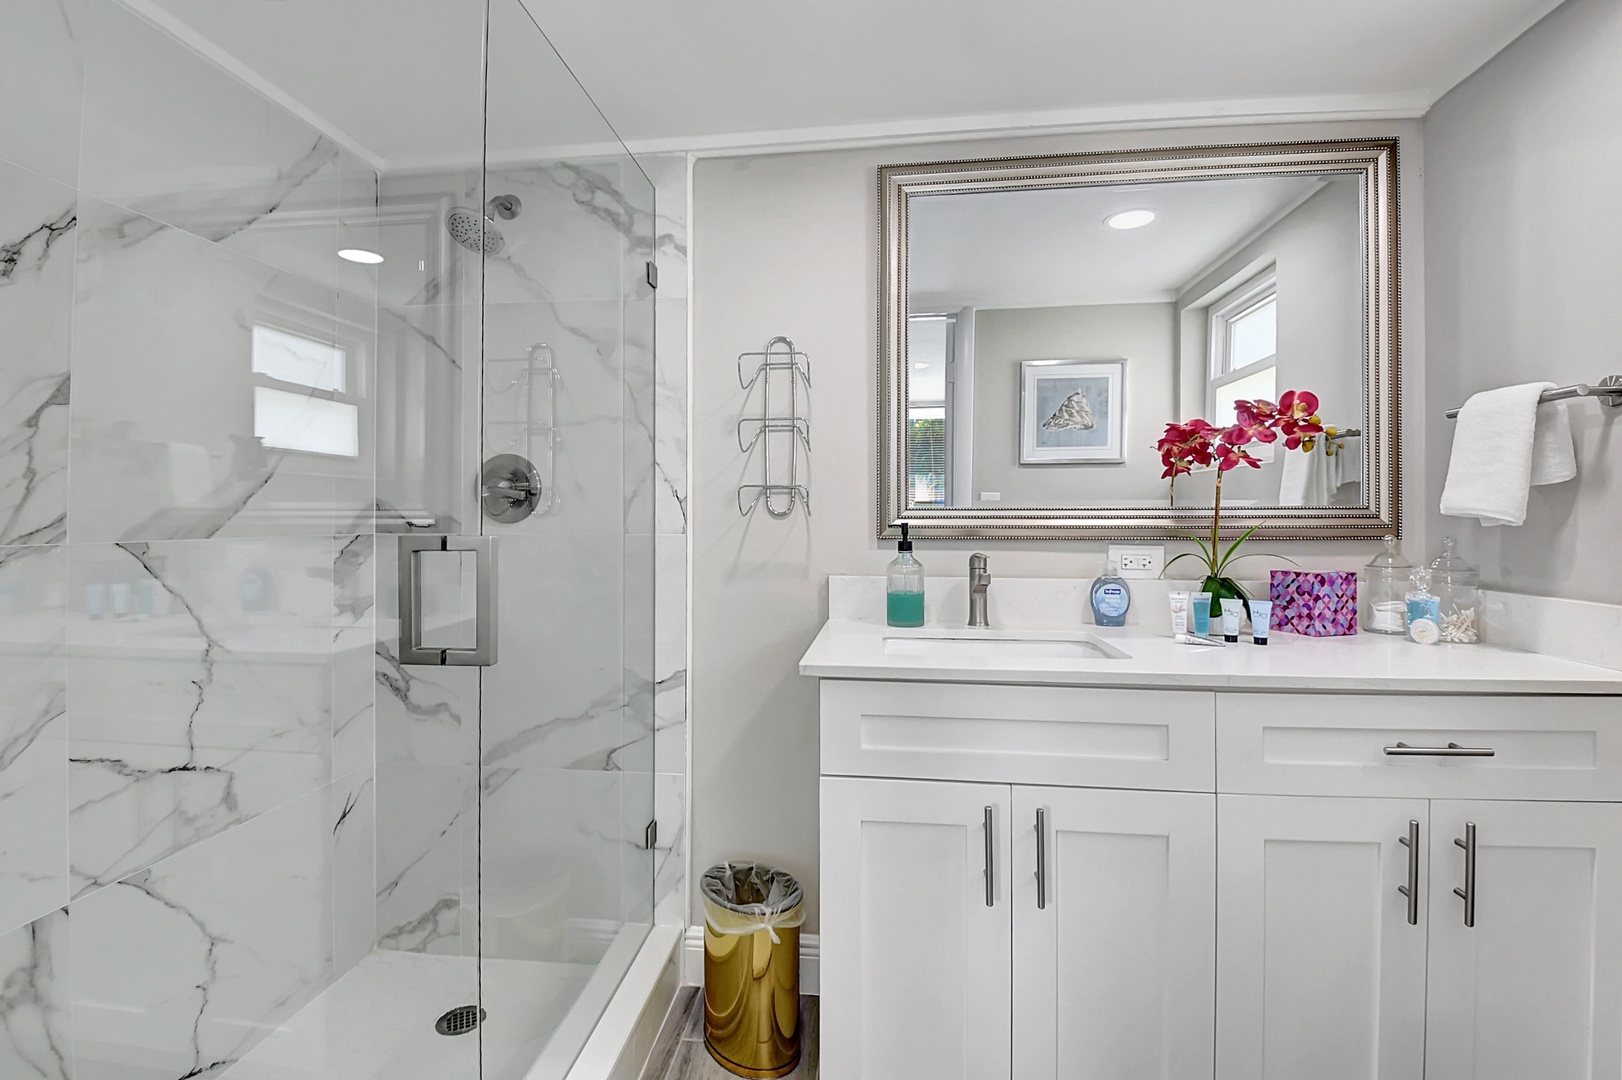 The queen en suite offers an oversized single vanity & glass shower